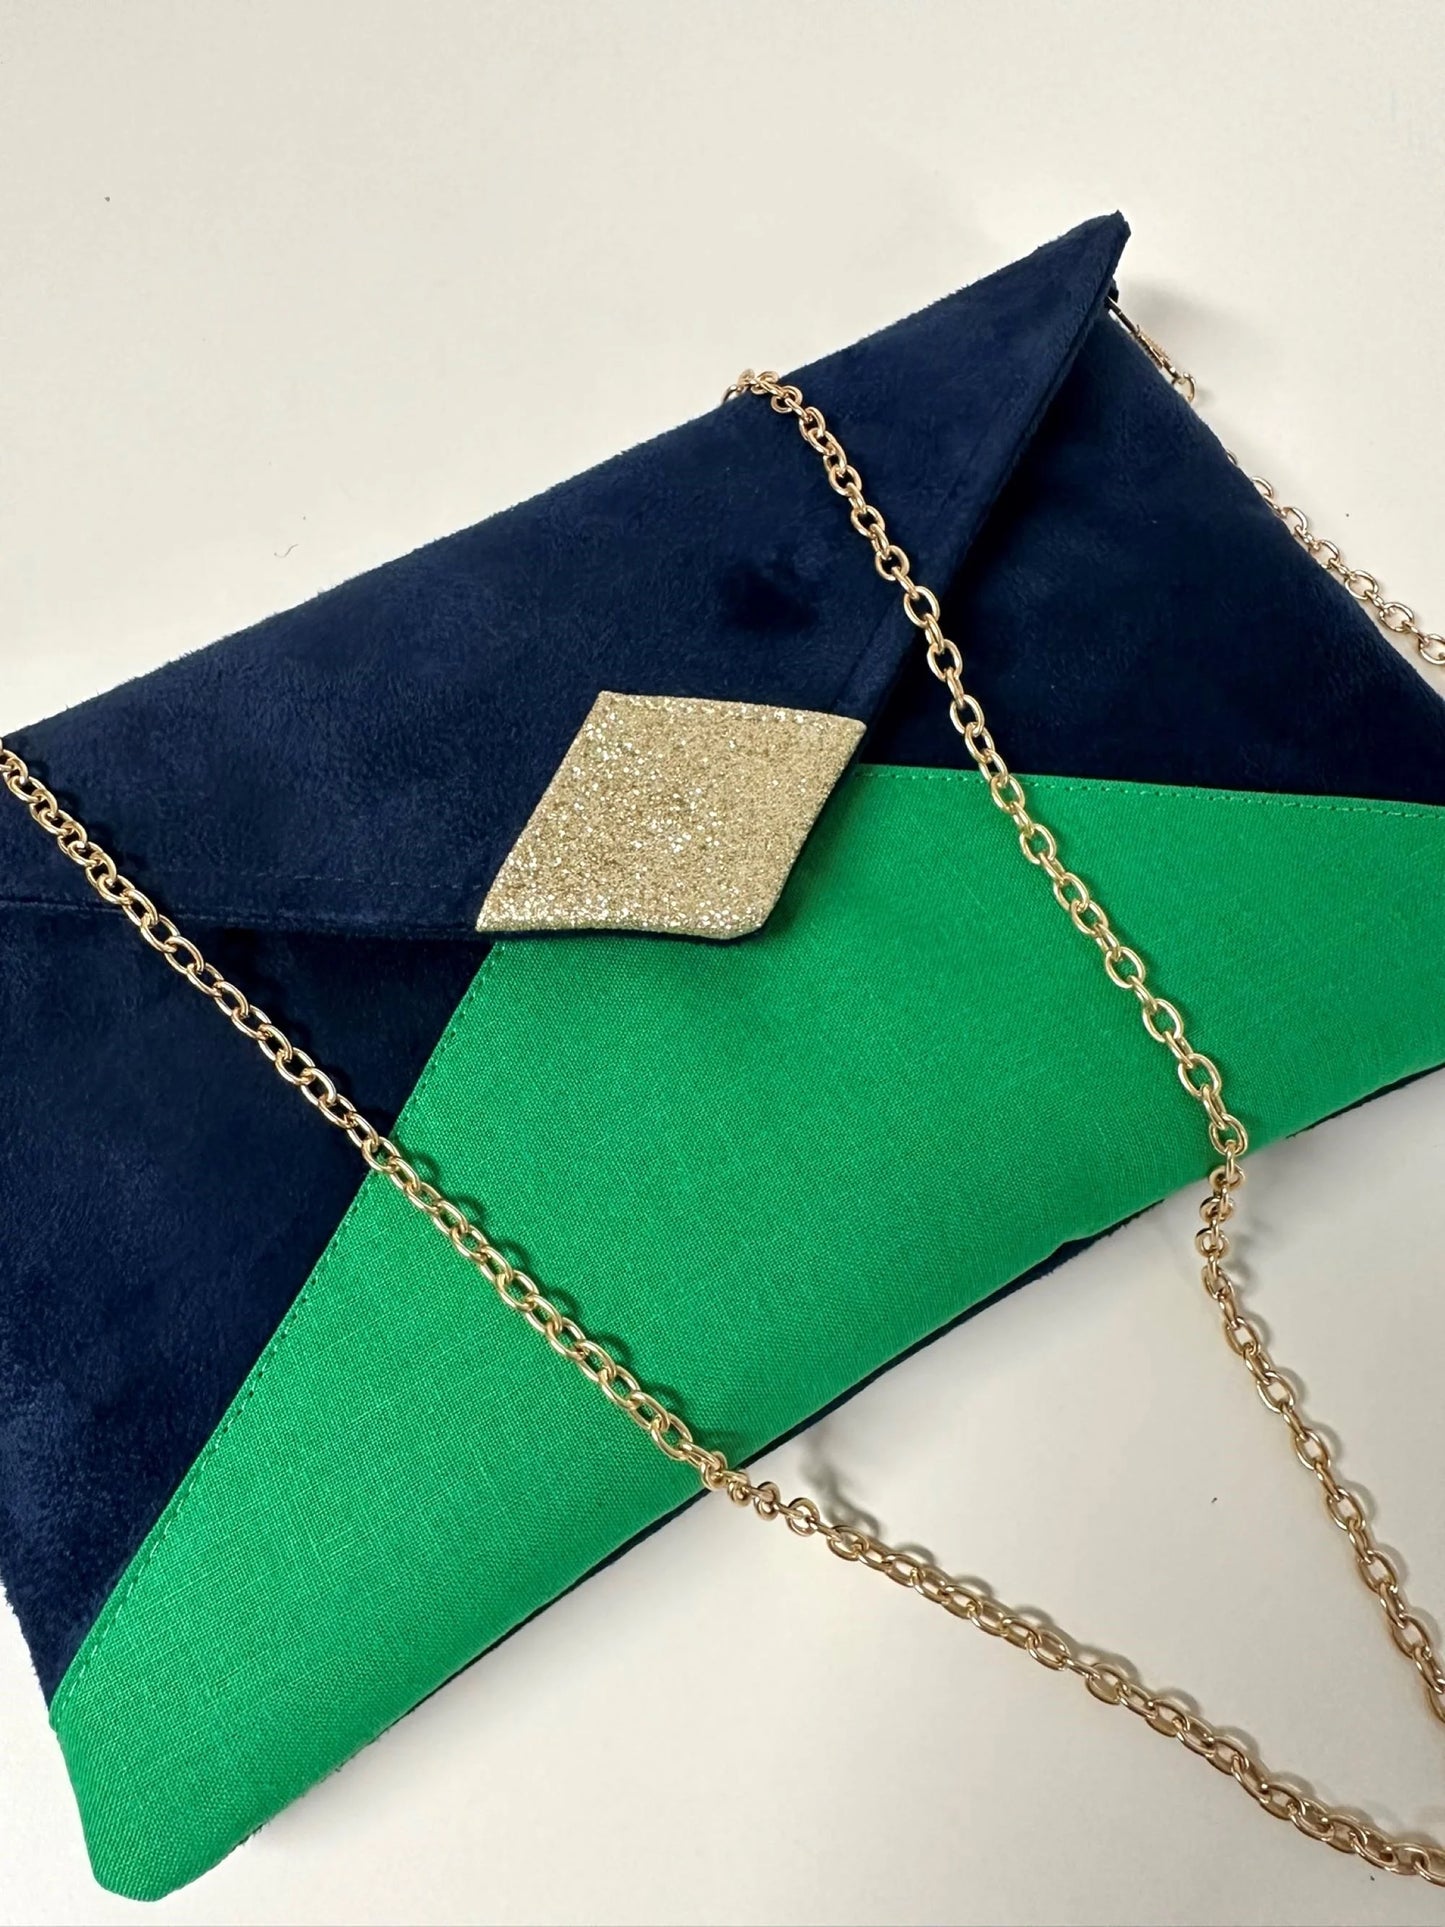 Vue détaillée du sac pochette Isa bleu marine et vert prairie à paillettes dorées.